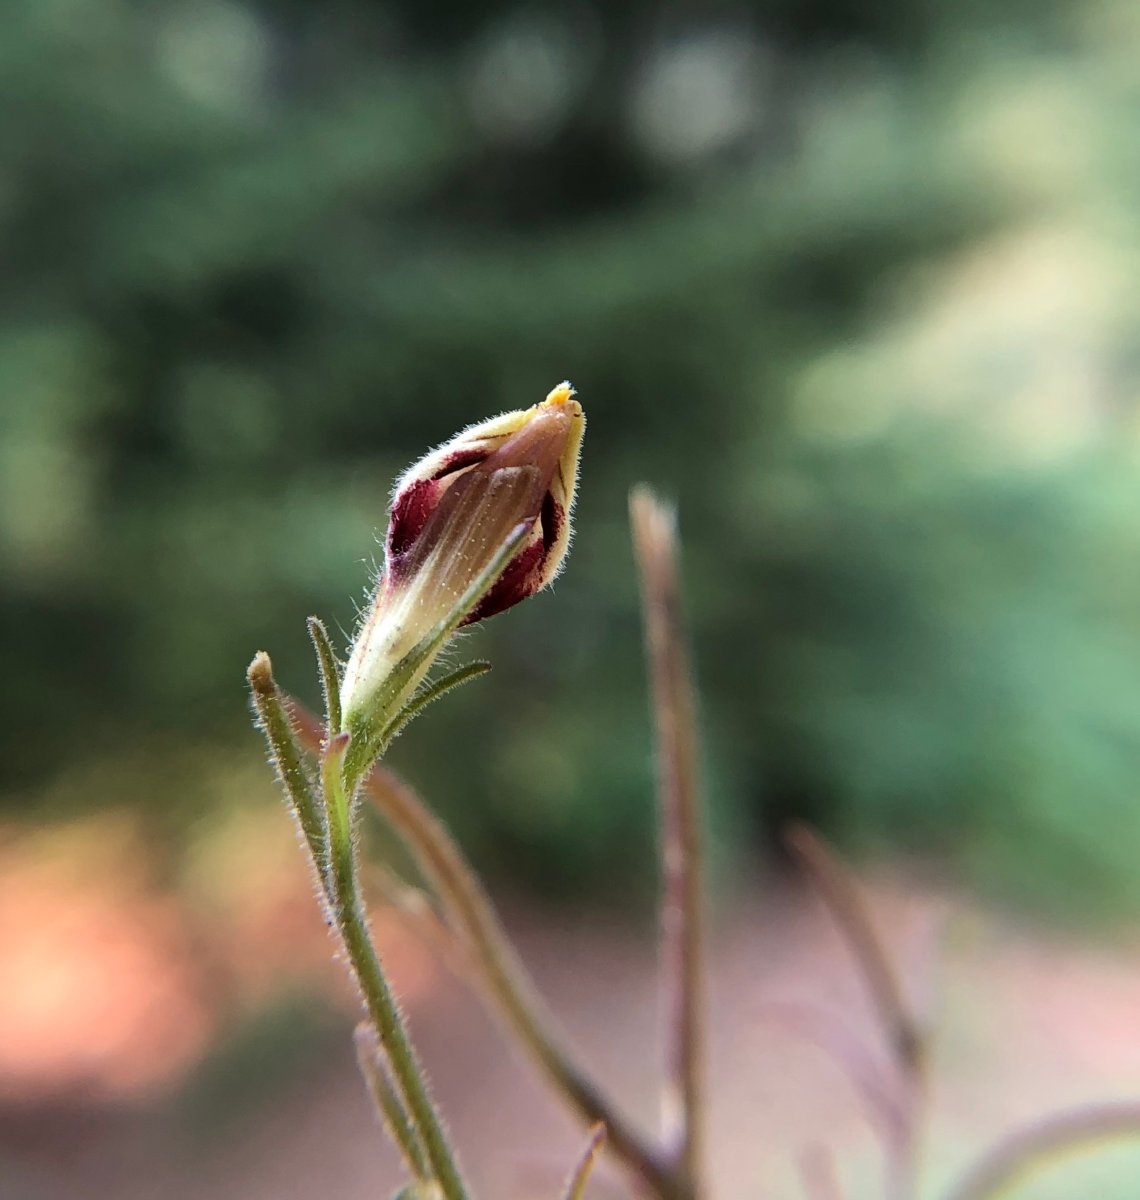 Cordylanthus tenuis ssp. viscidus